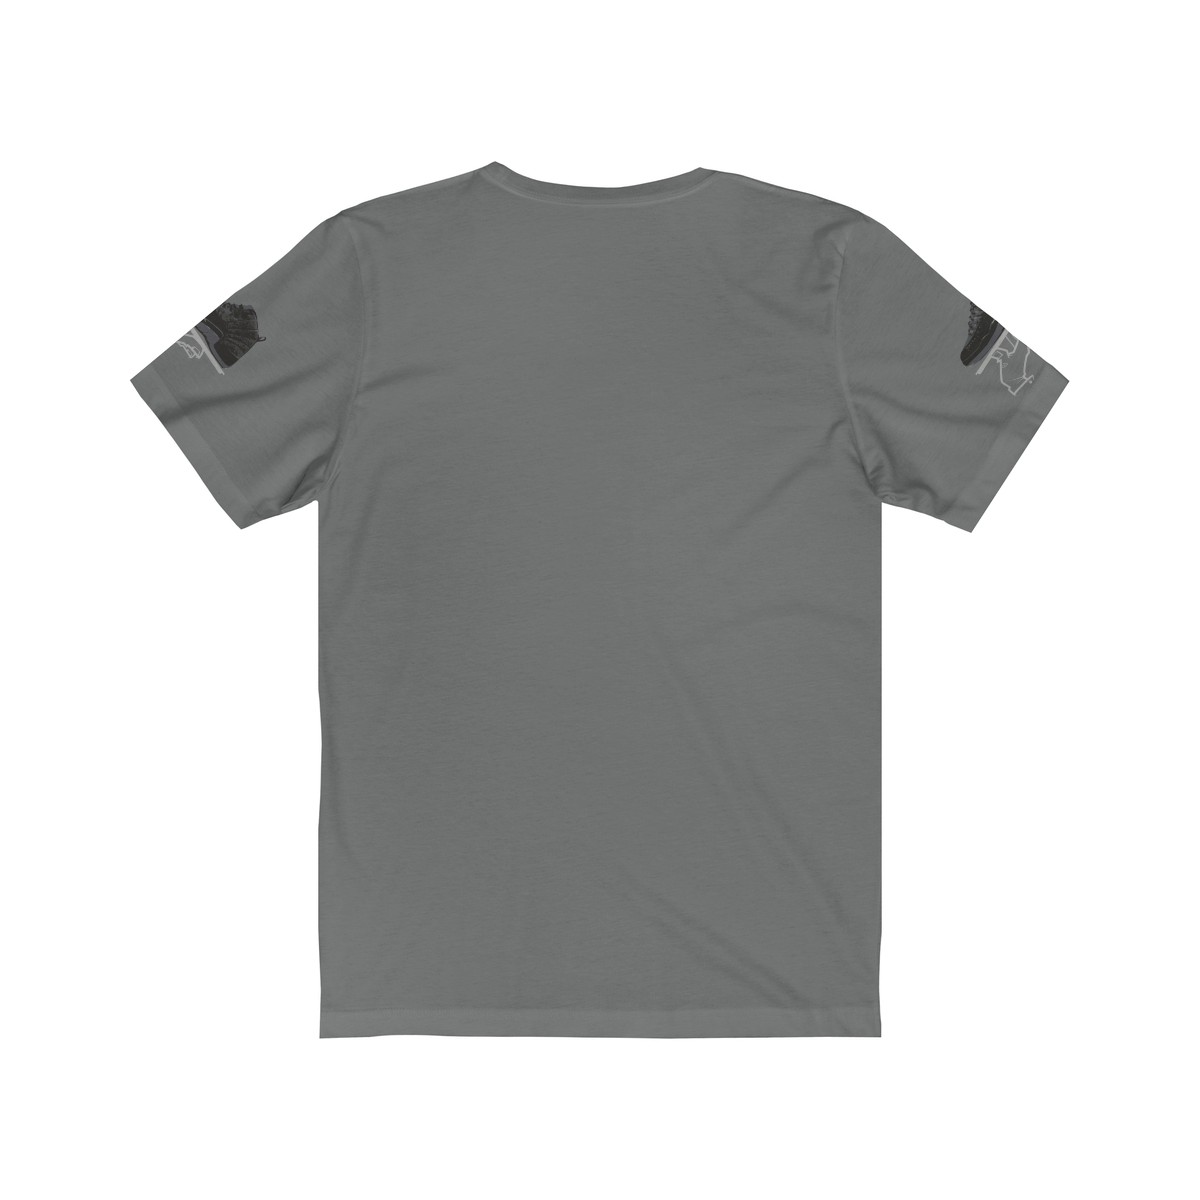 Jordan 12 Wool sneaker color match Shirt | Beefeater